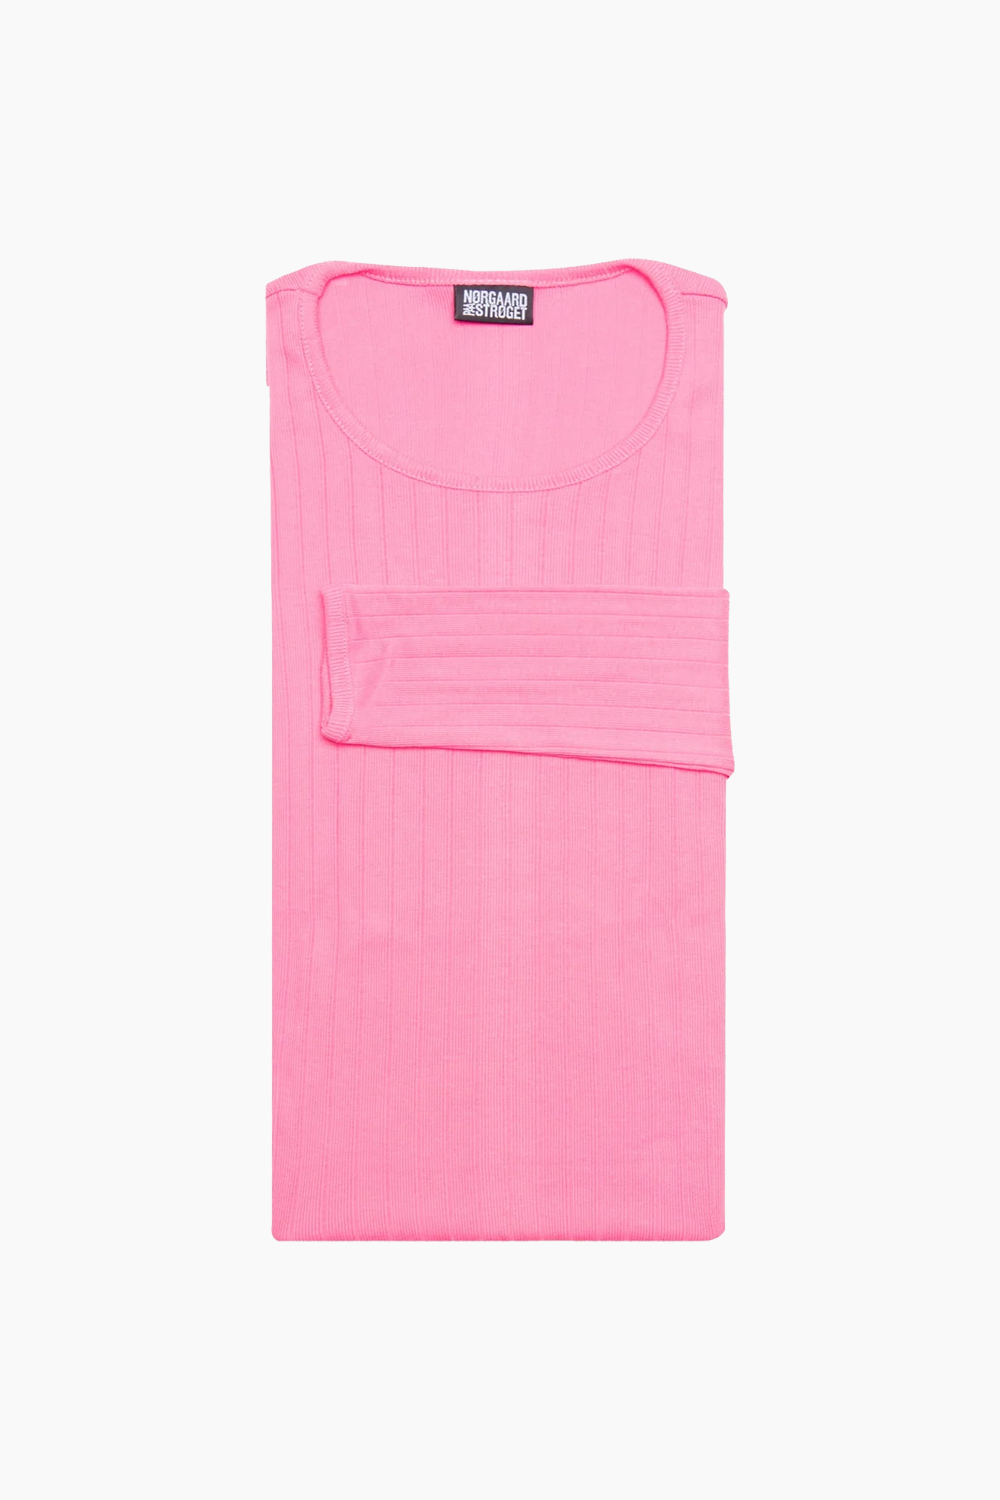 Billede af 101 Solid Colour - Light Pink - Nørgaard på Strøget - Pink One Size